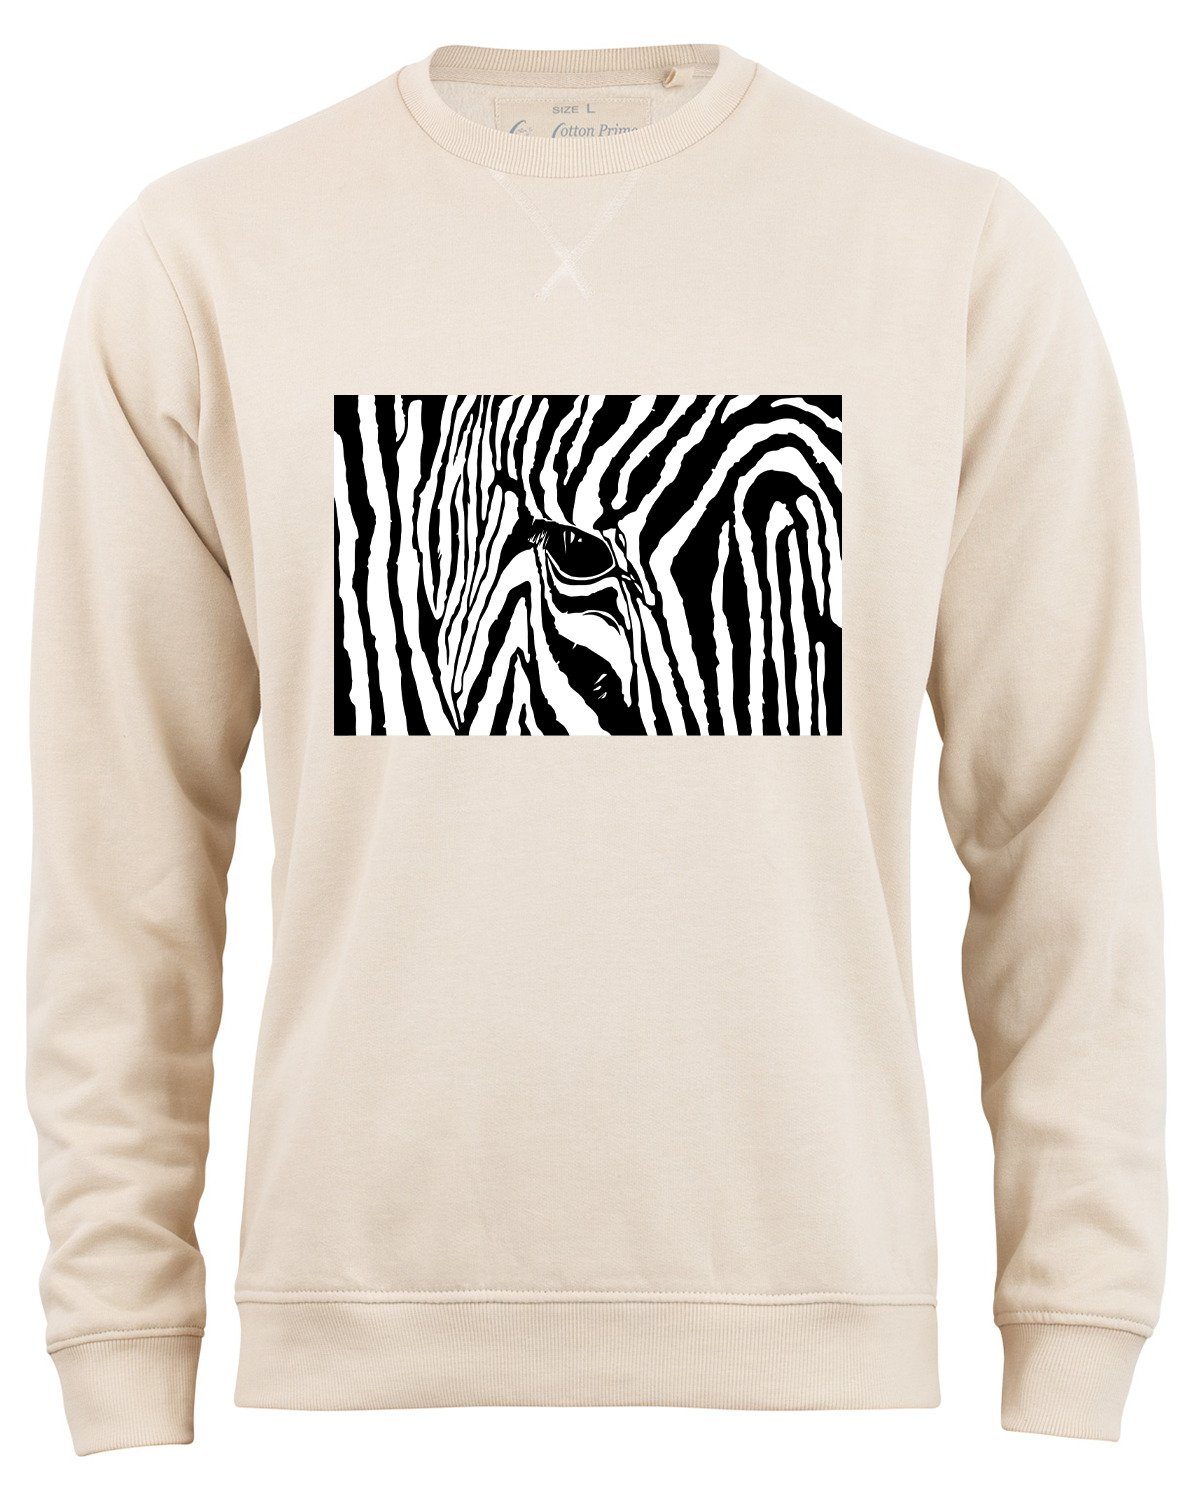 Cotton Prime® Sweatshirt Black & White Zebra Eye mit weichem Innenfleece Beige